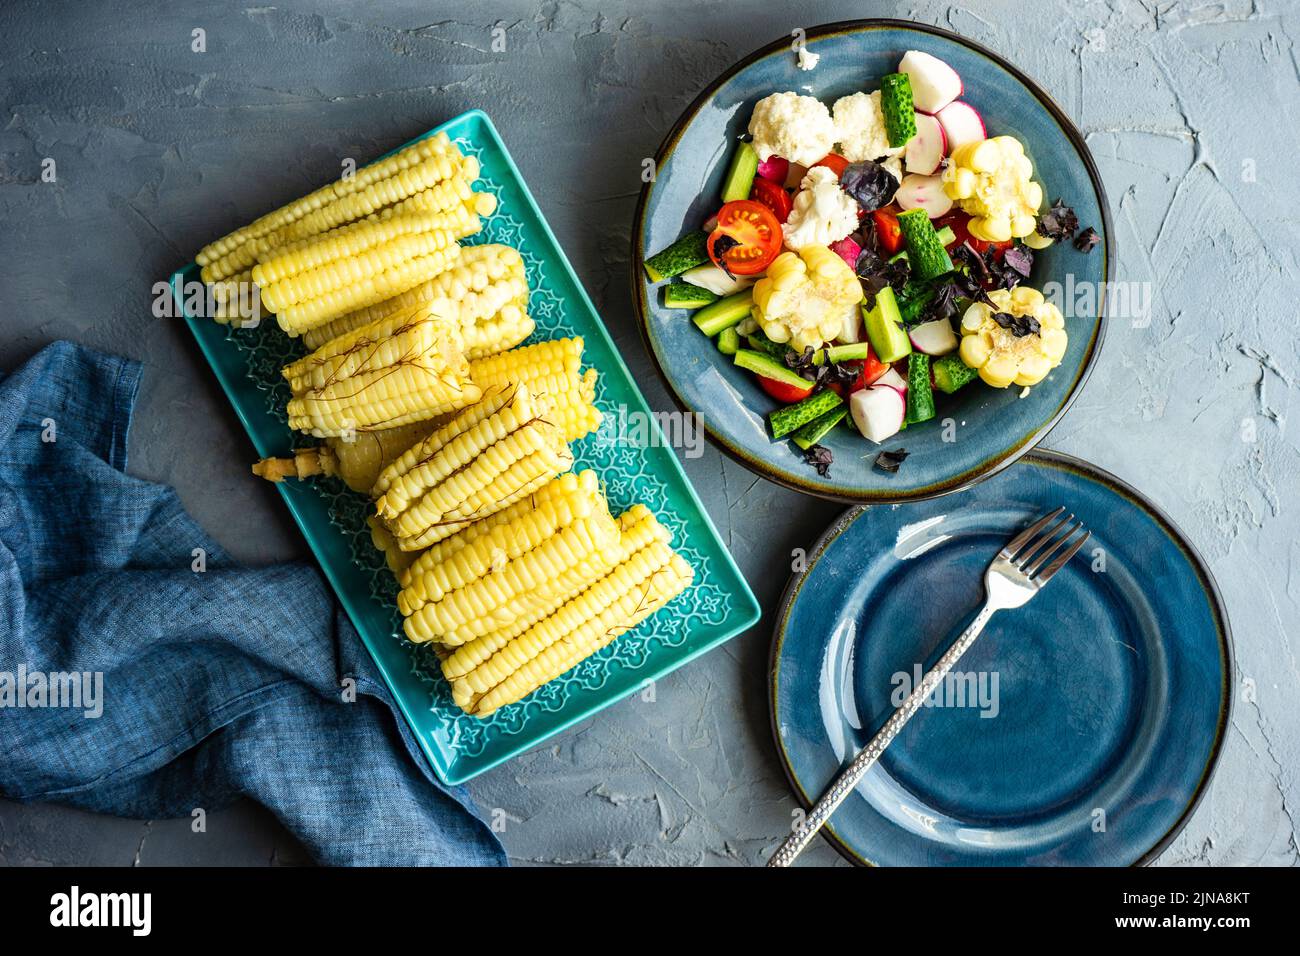 Ensalada de verduras saludables con maíz hervido servido en el cuenco azul profundo Foto de stock